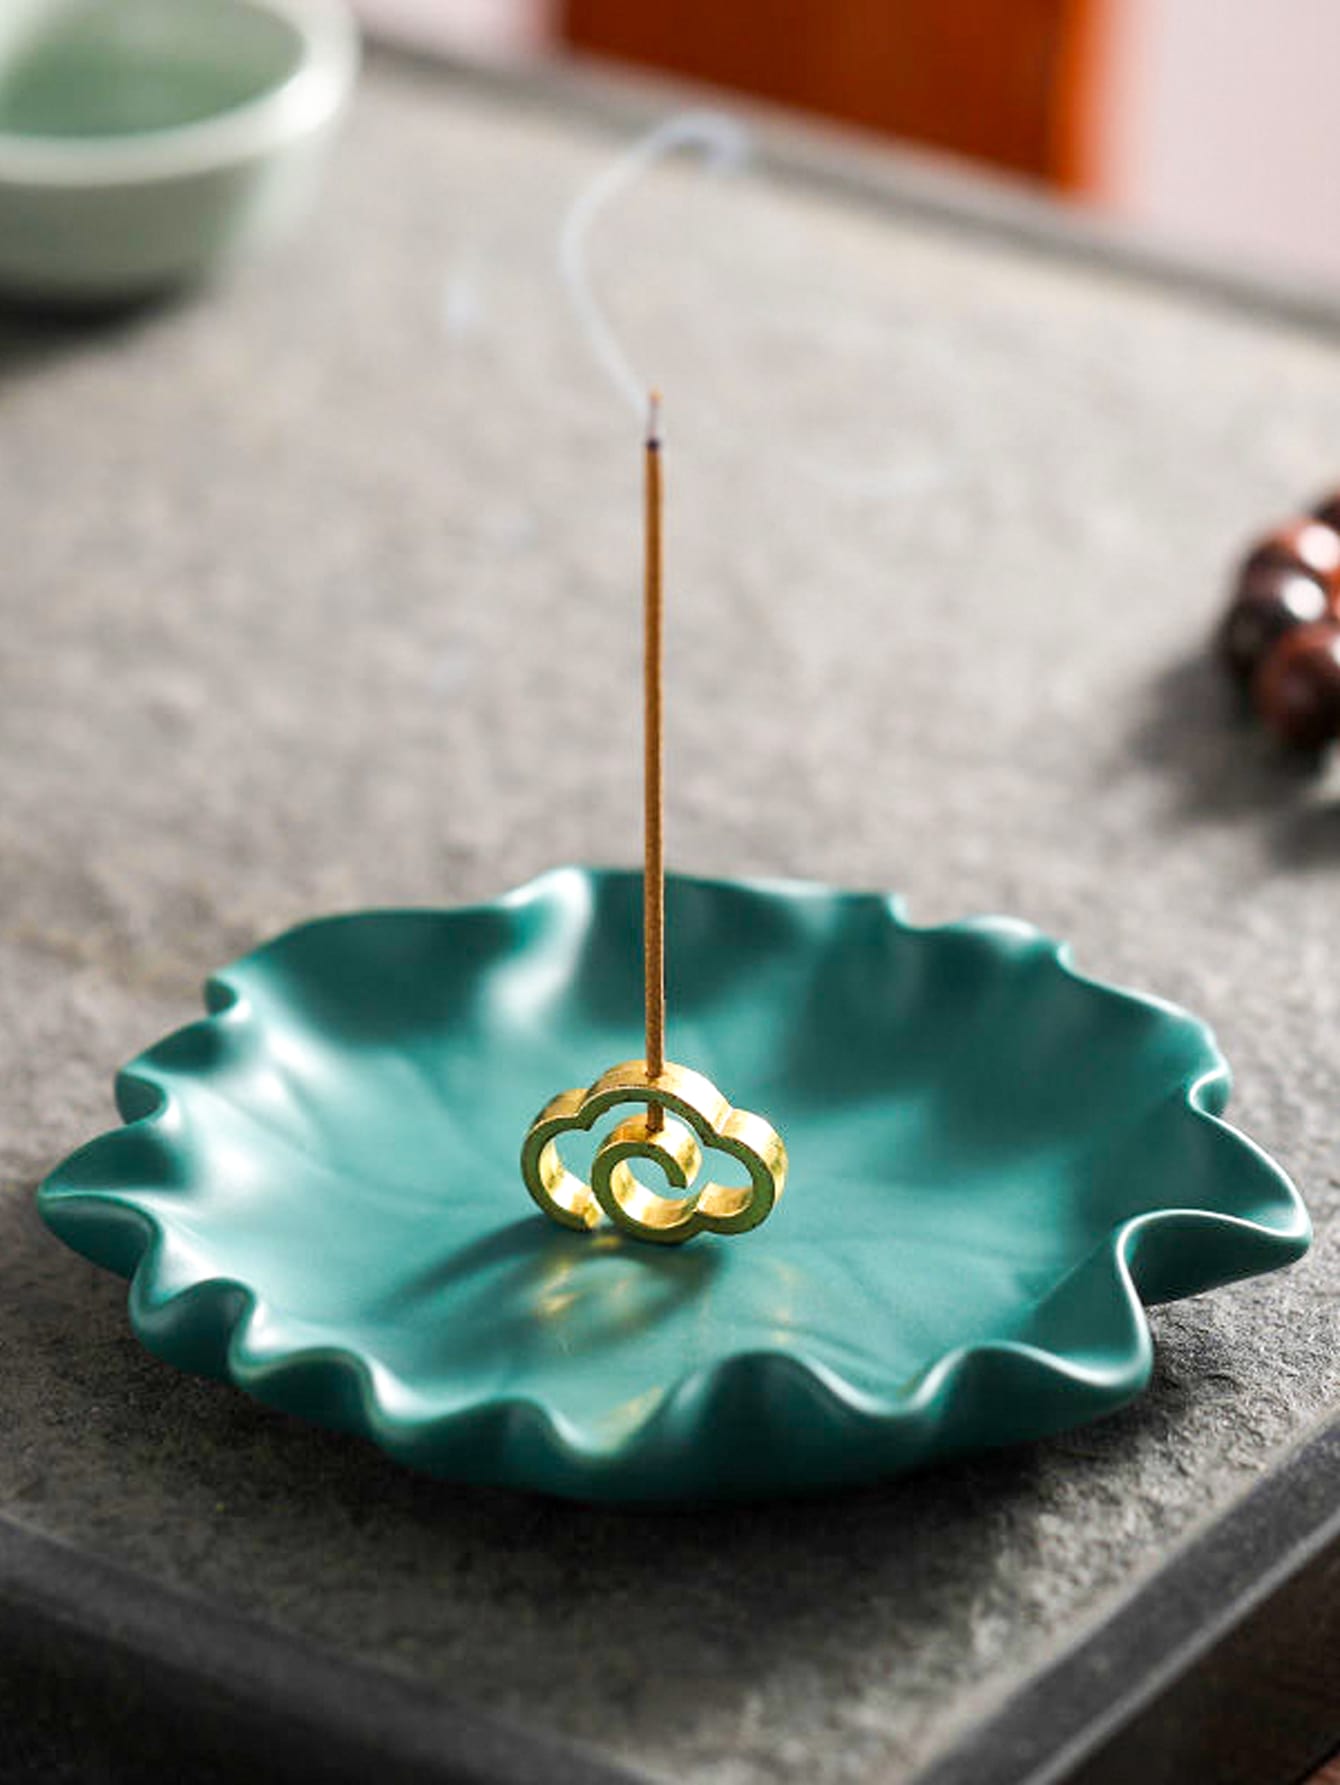 Meditation Gift -  Incense Burner (incense holder) Yoga and Meditation Products - Personal Hour